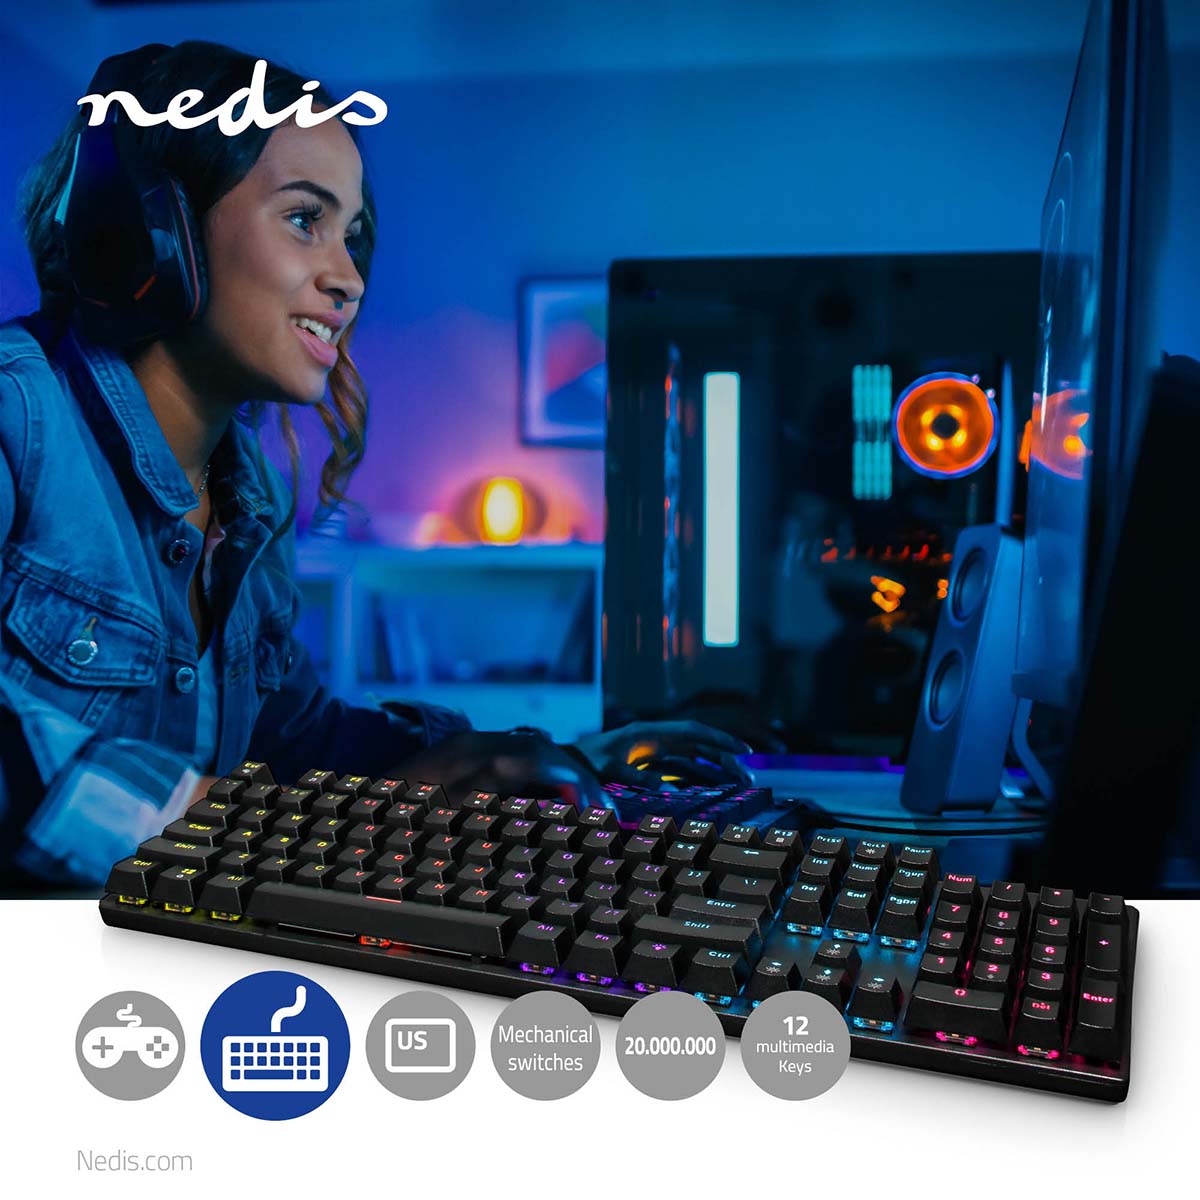 Wired Gaming Keyboard | USB Type-A | Mechanische Tasten | LED | QWERTY | US-Layout | Stromversorgung über USB | Netzkabellänge: 1.50 m | Gaming